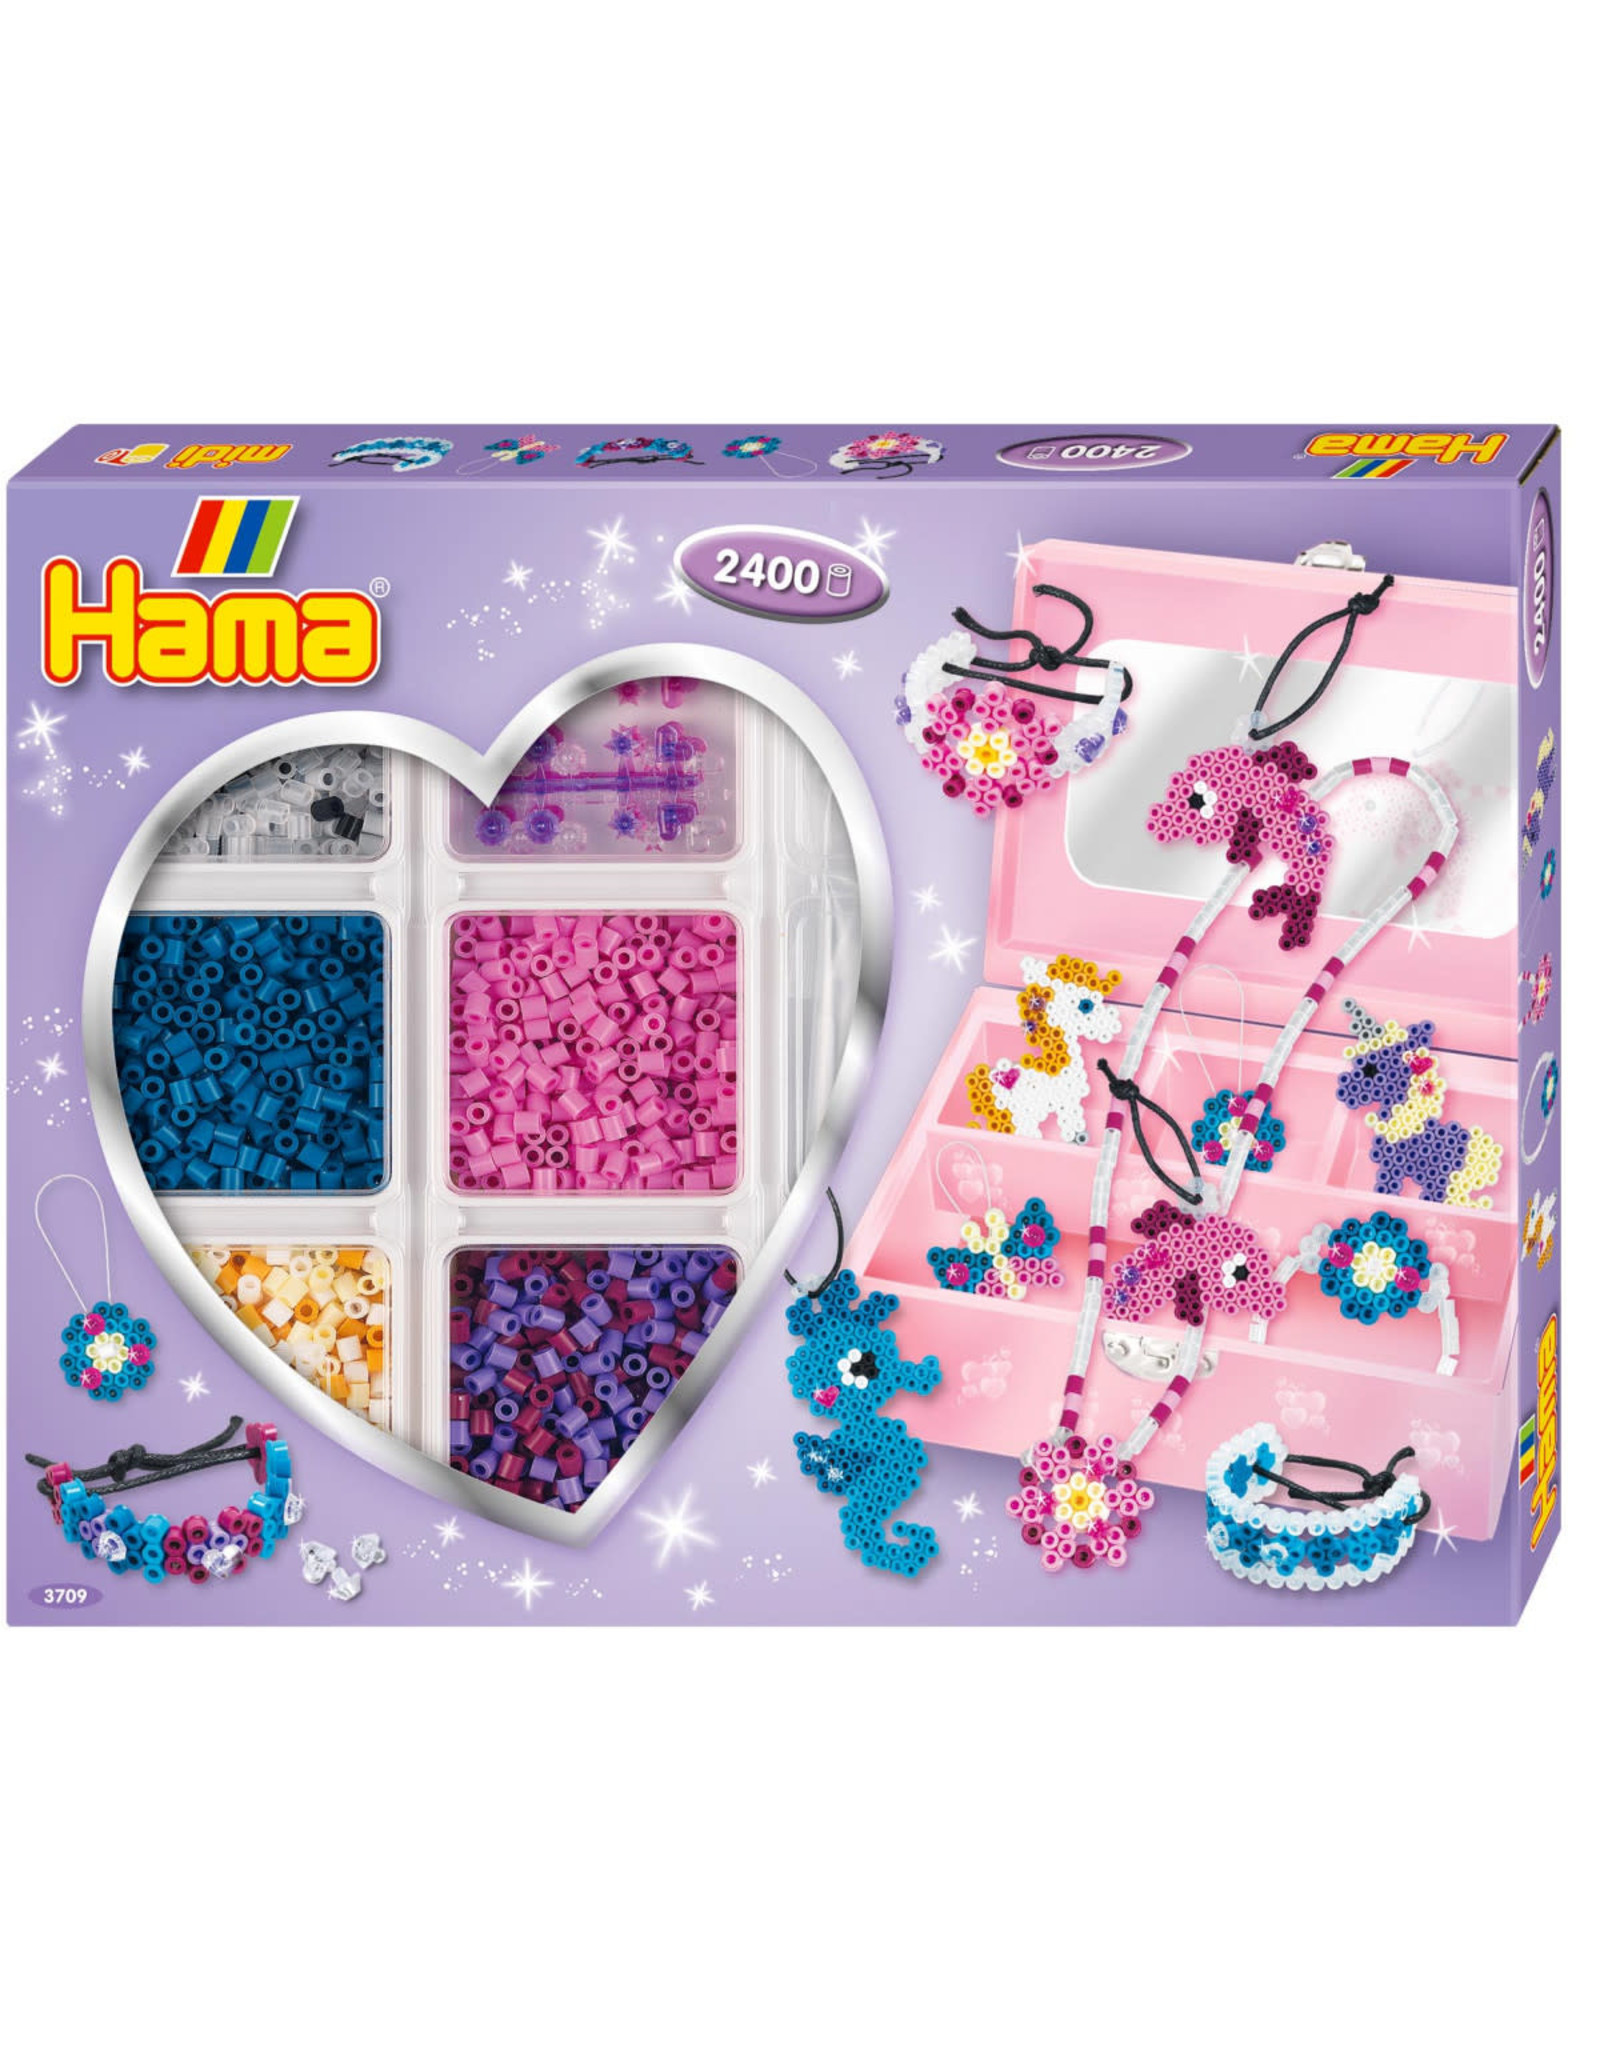 Hama Hama Gift Box Purple